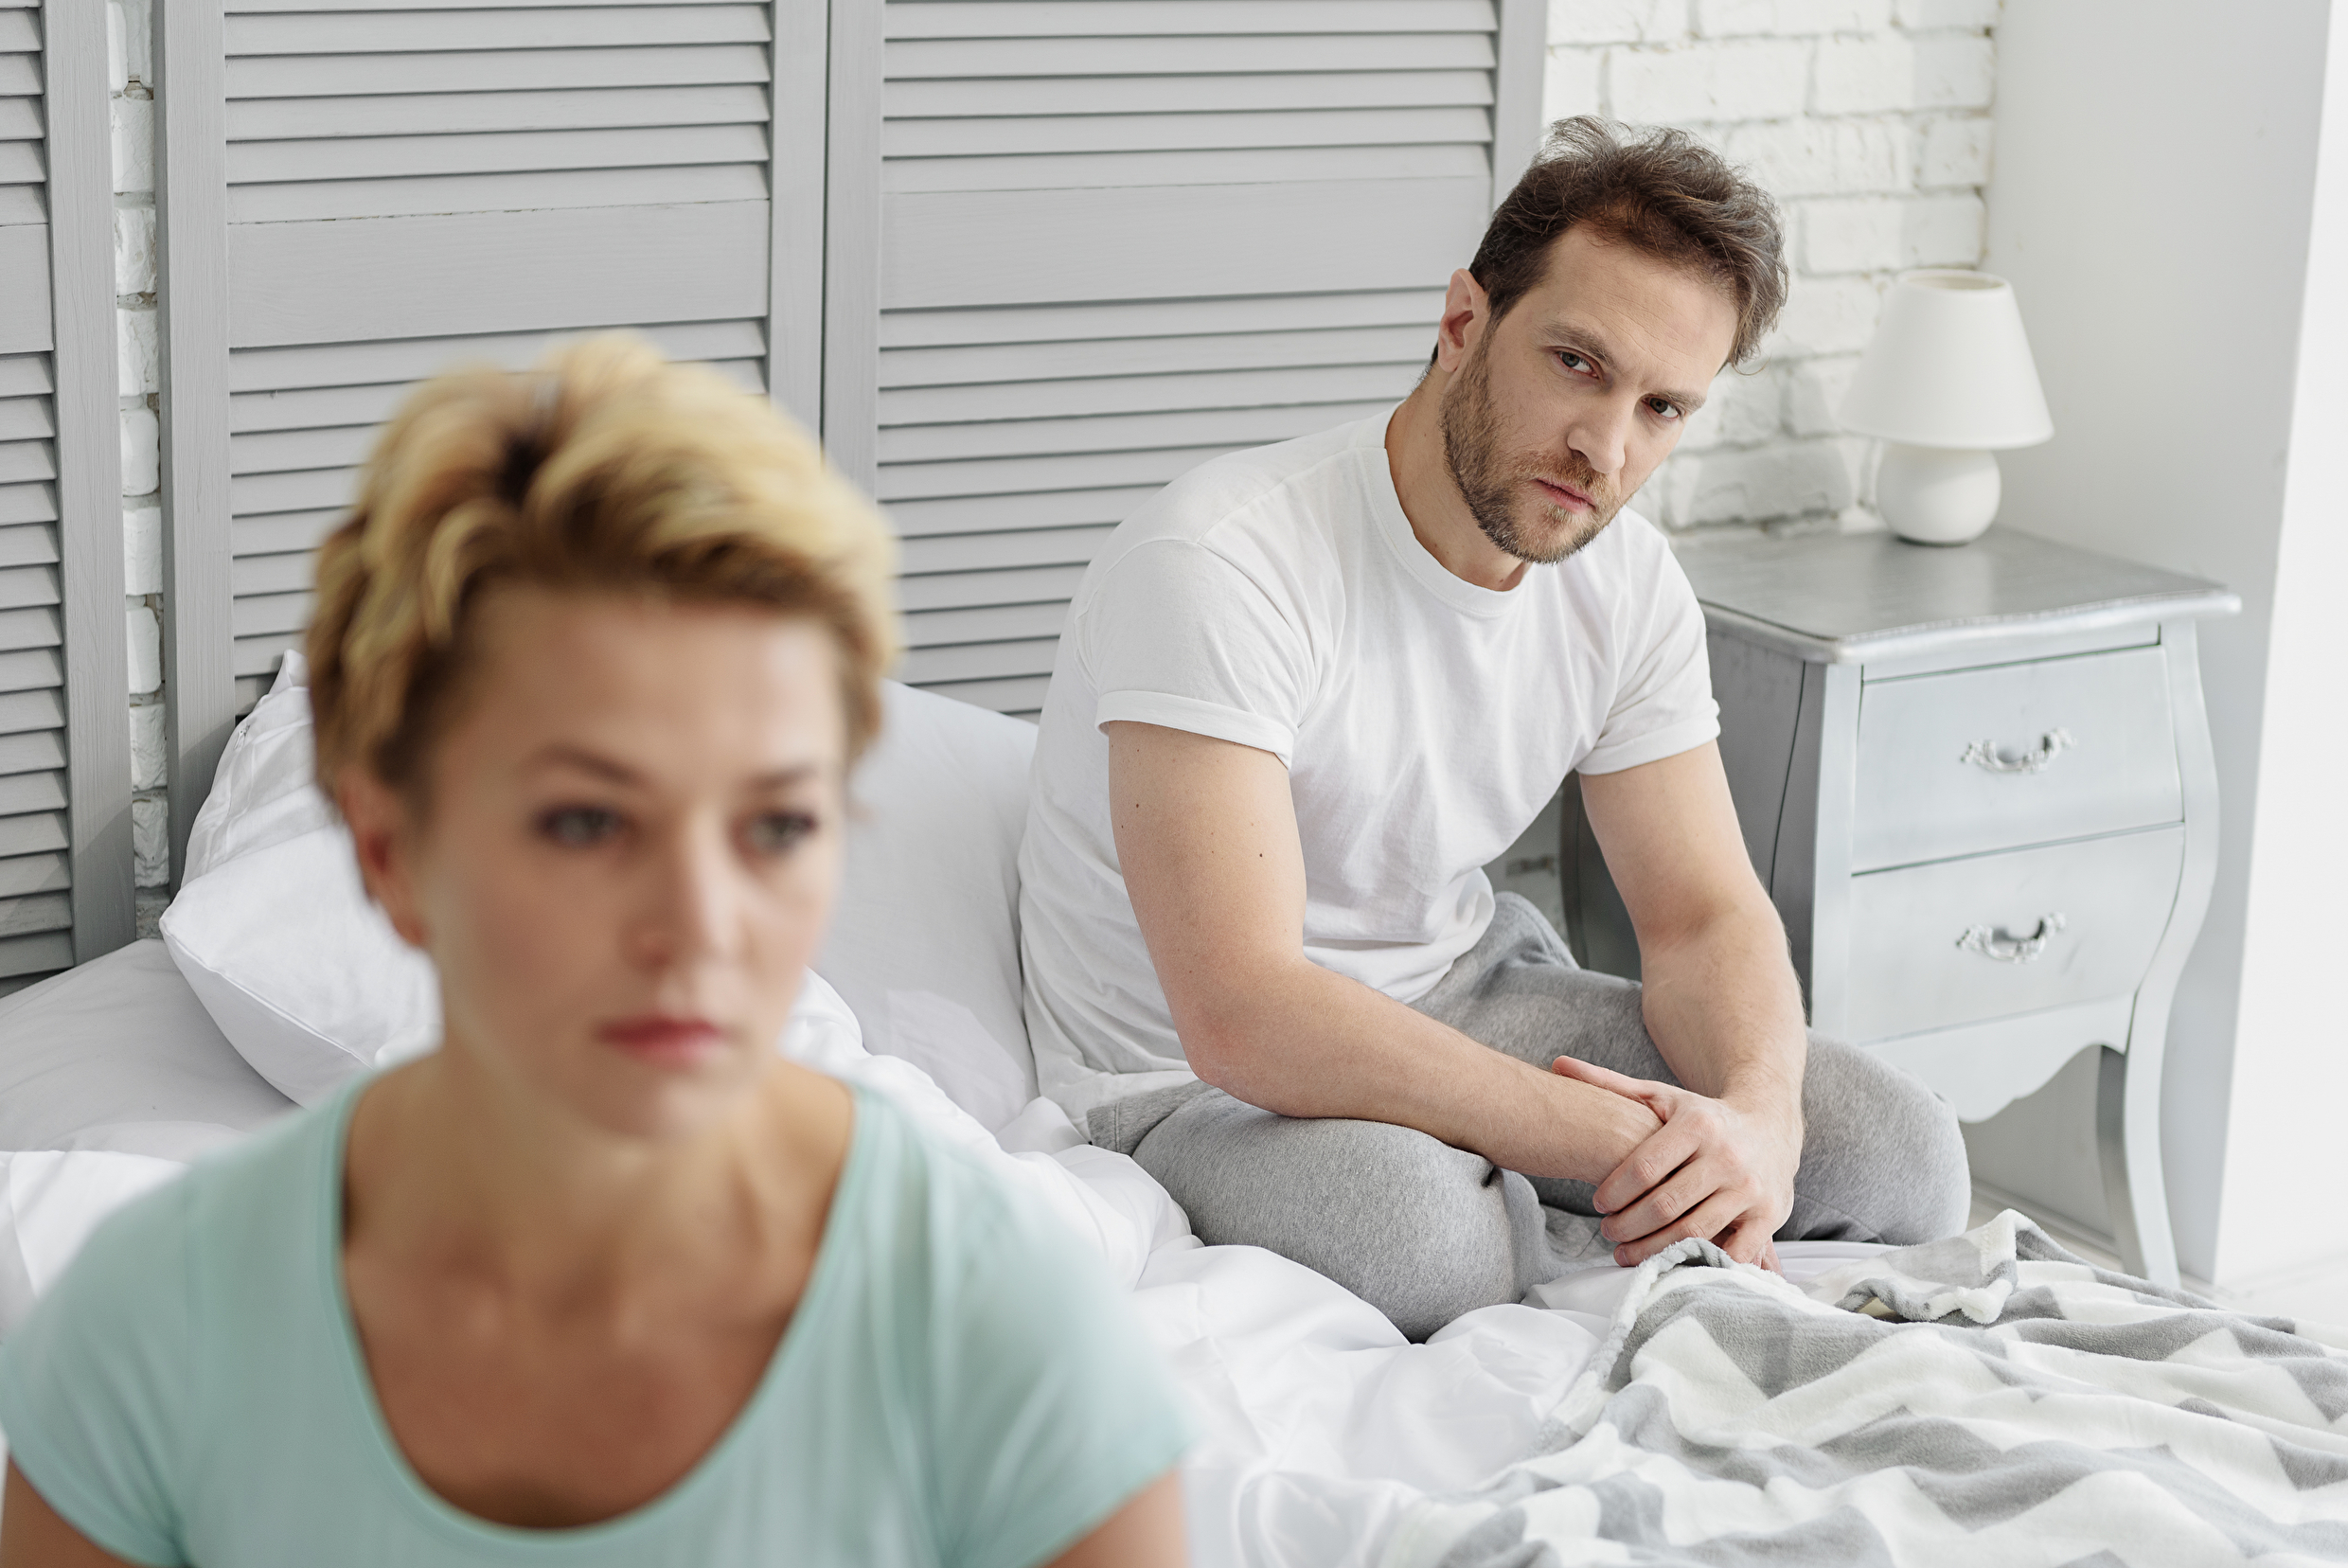 Min kone tager aldrig initiativ til sex Ude og Hjemme pic